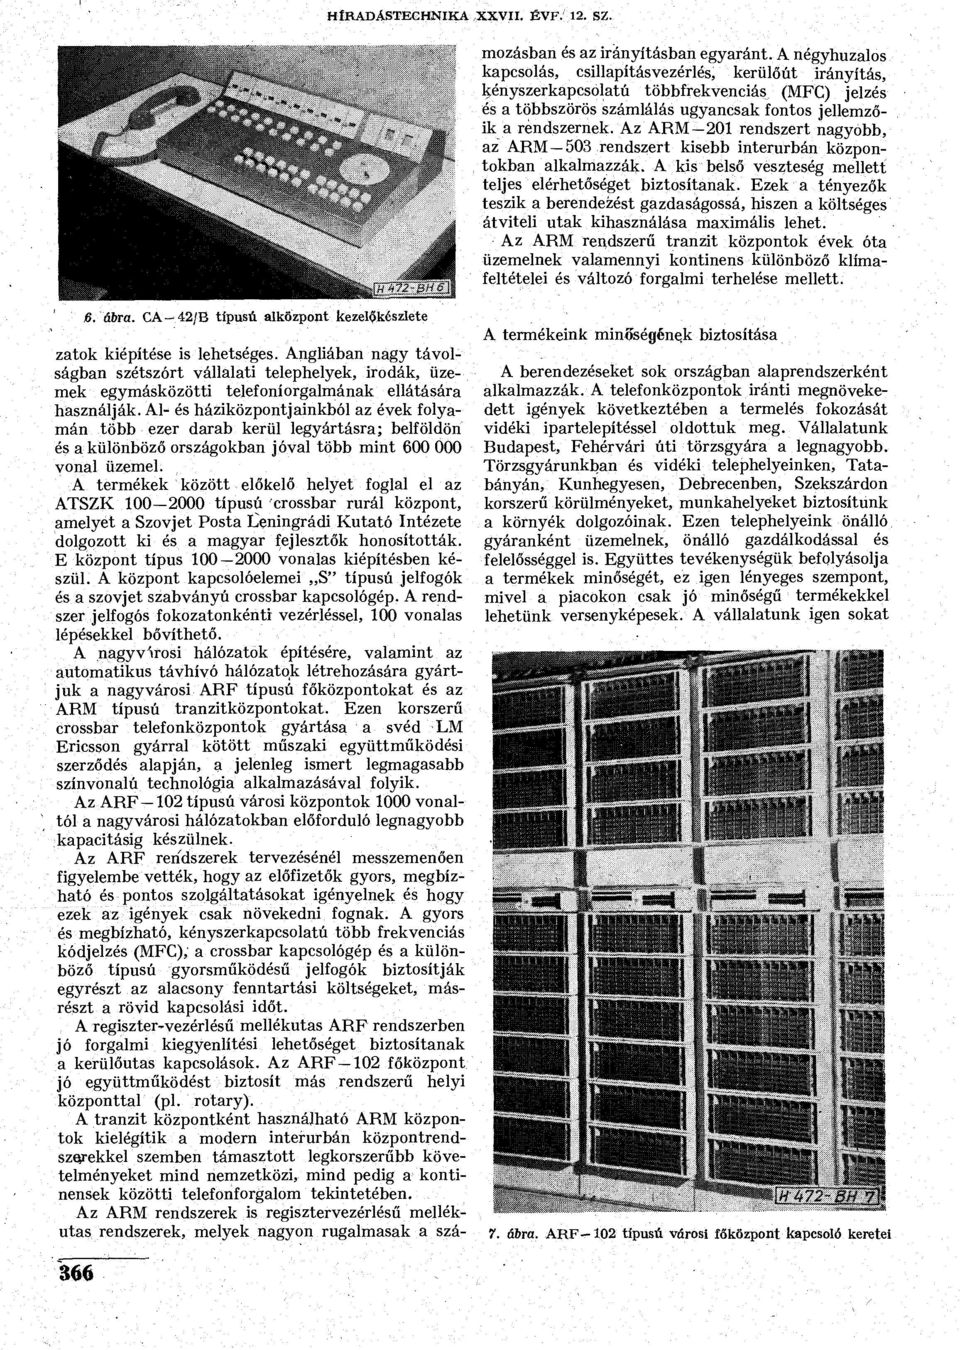 A termékek között előkelő helyet foglal el az ATSZK 100-2000 típusú crossbar rurál központ, amelyet a Szovjet Posta Leningrádi Kutató Intézete dolgozott ki és a magyar fejlesztők honosították.